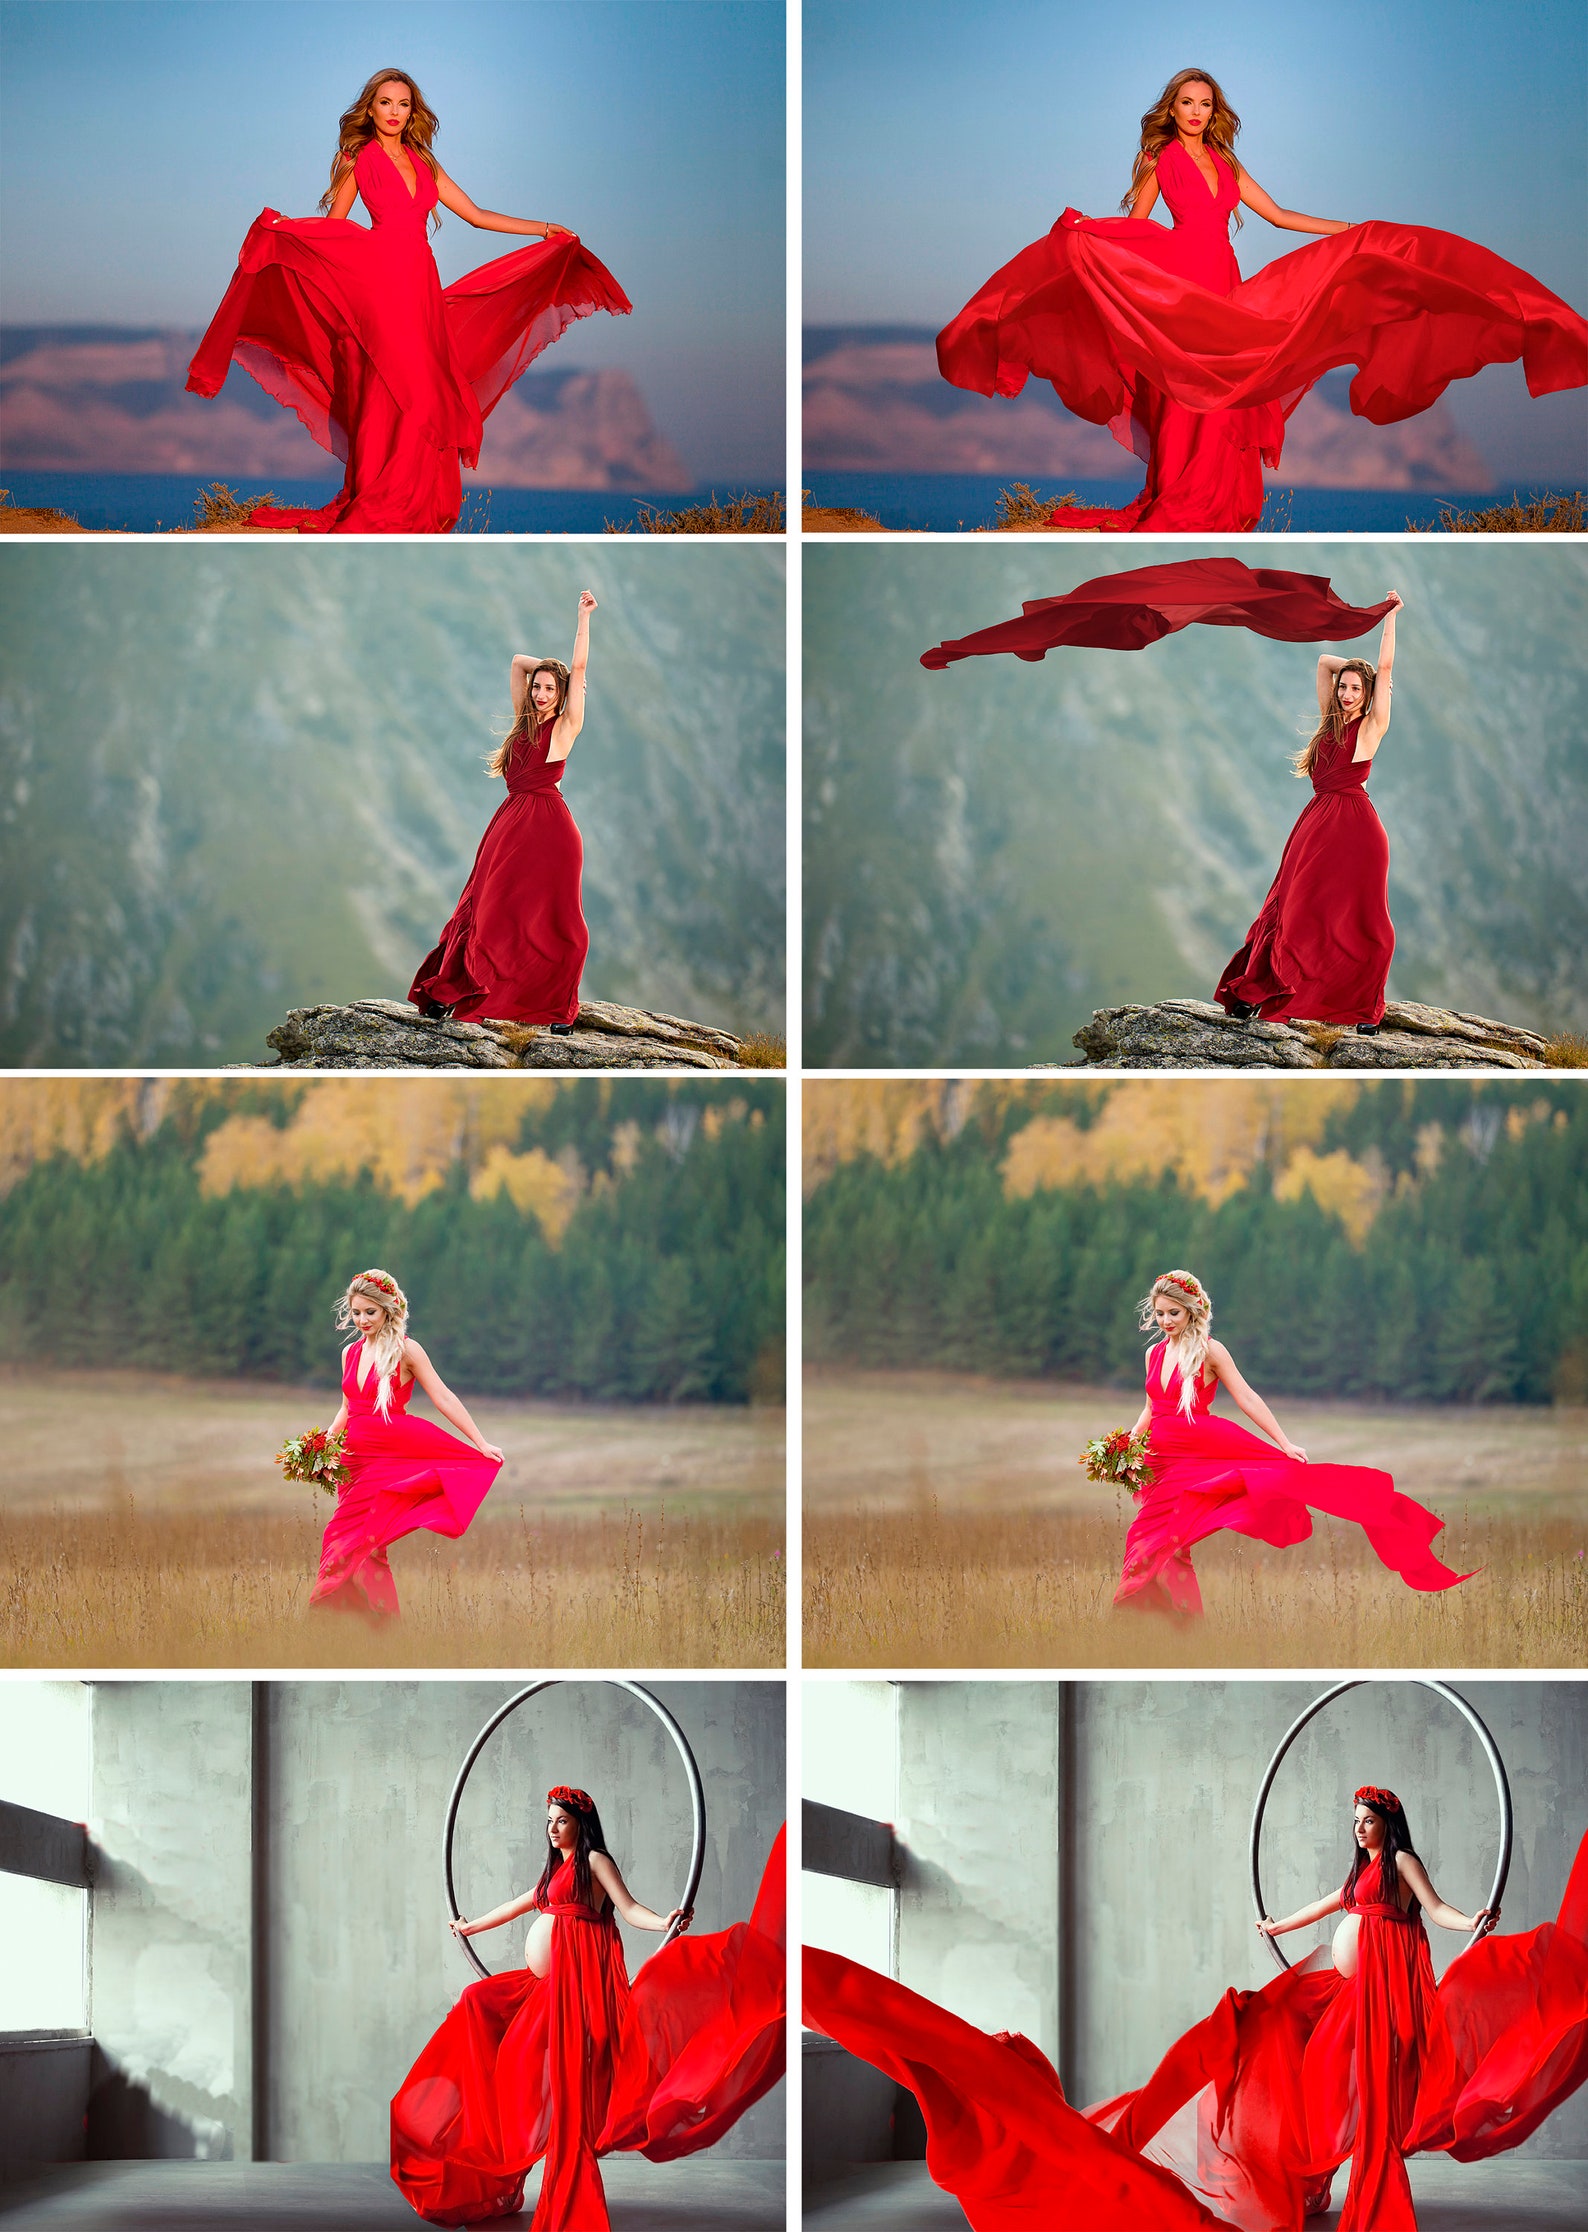 55 Flying fabric dress Photo Overlays Photoshop Mix Overlay | Etsy